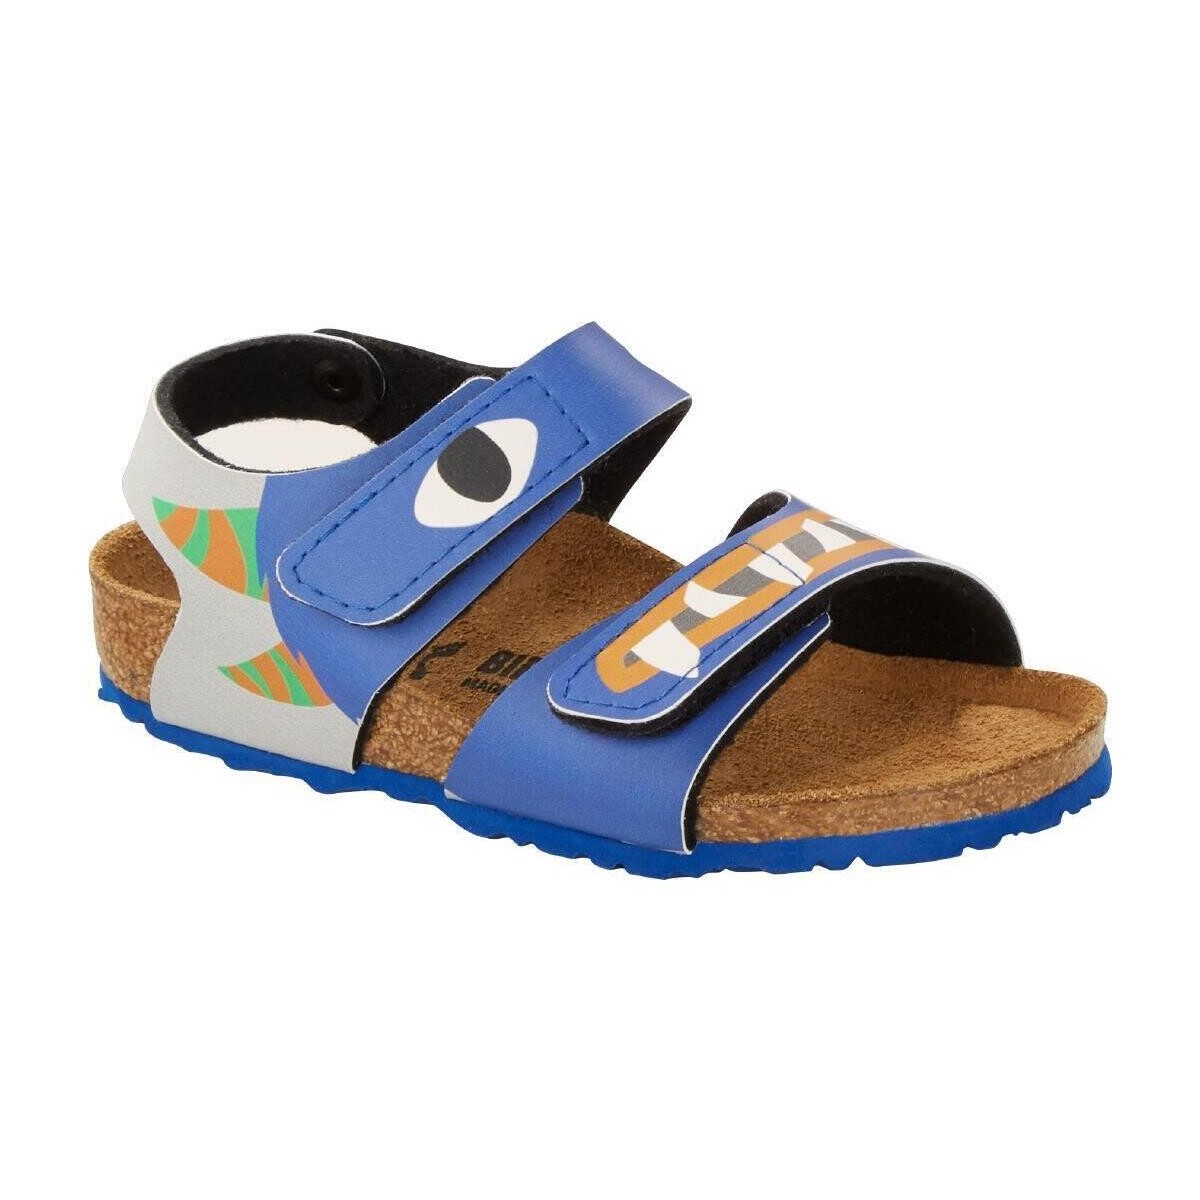 Schoenen Kinderen Sandalen / Open schoenen Birkenstock 1018989 Blauw